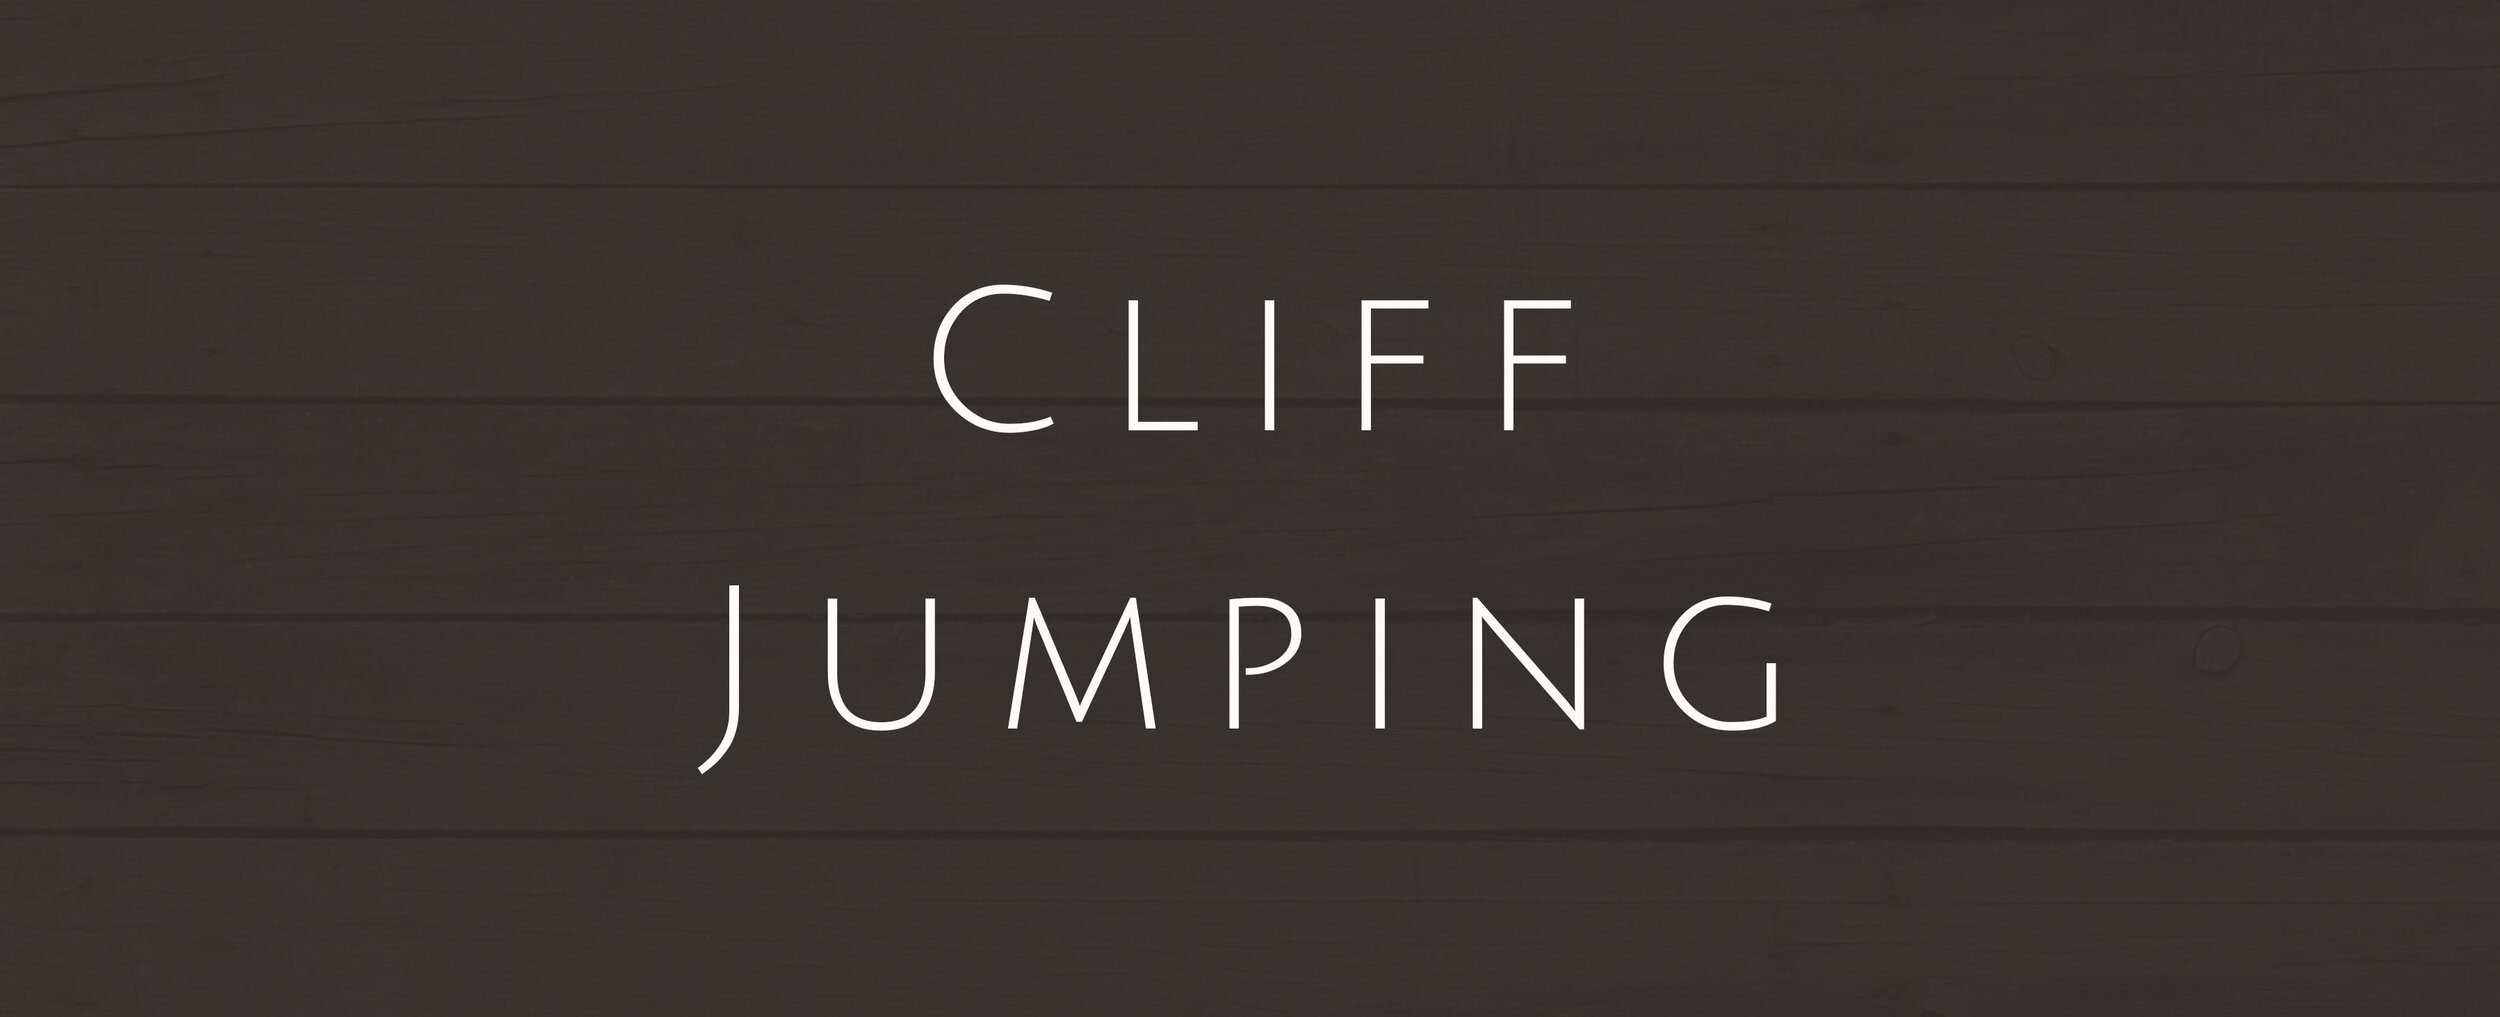 All - Cliff Jumping.jpg